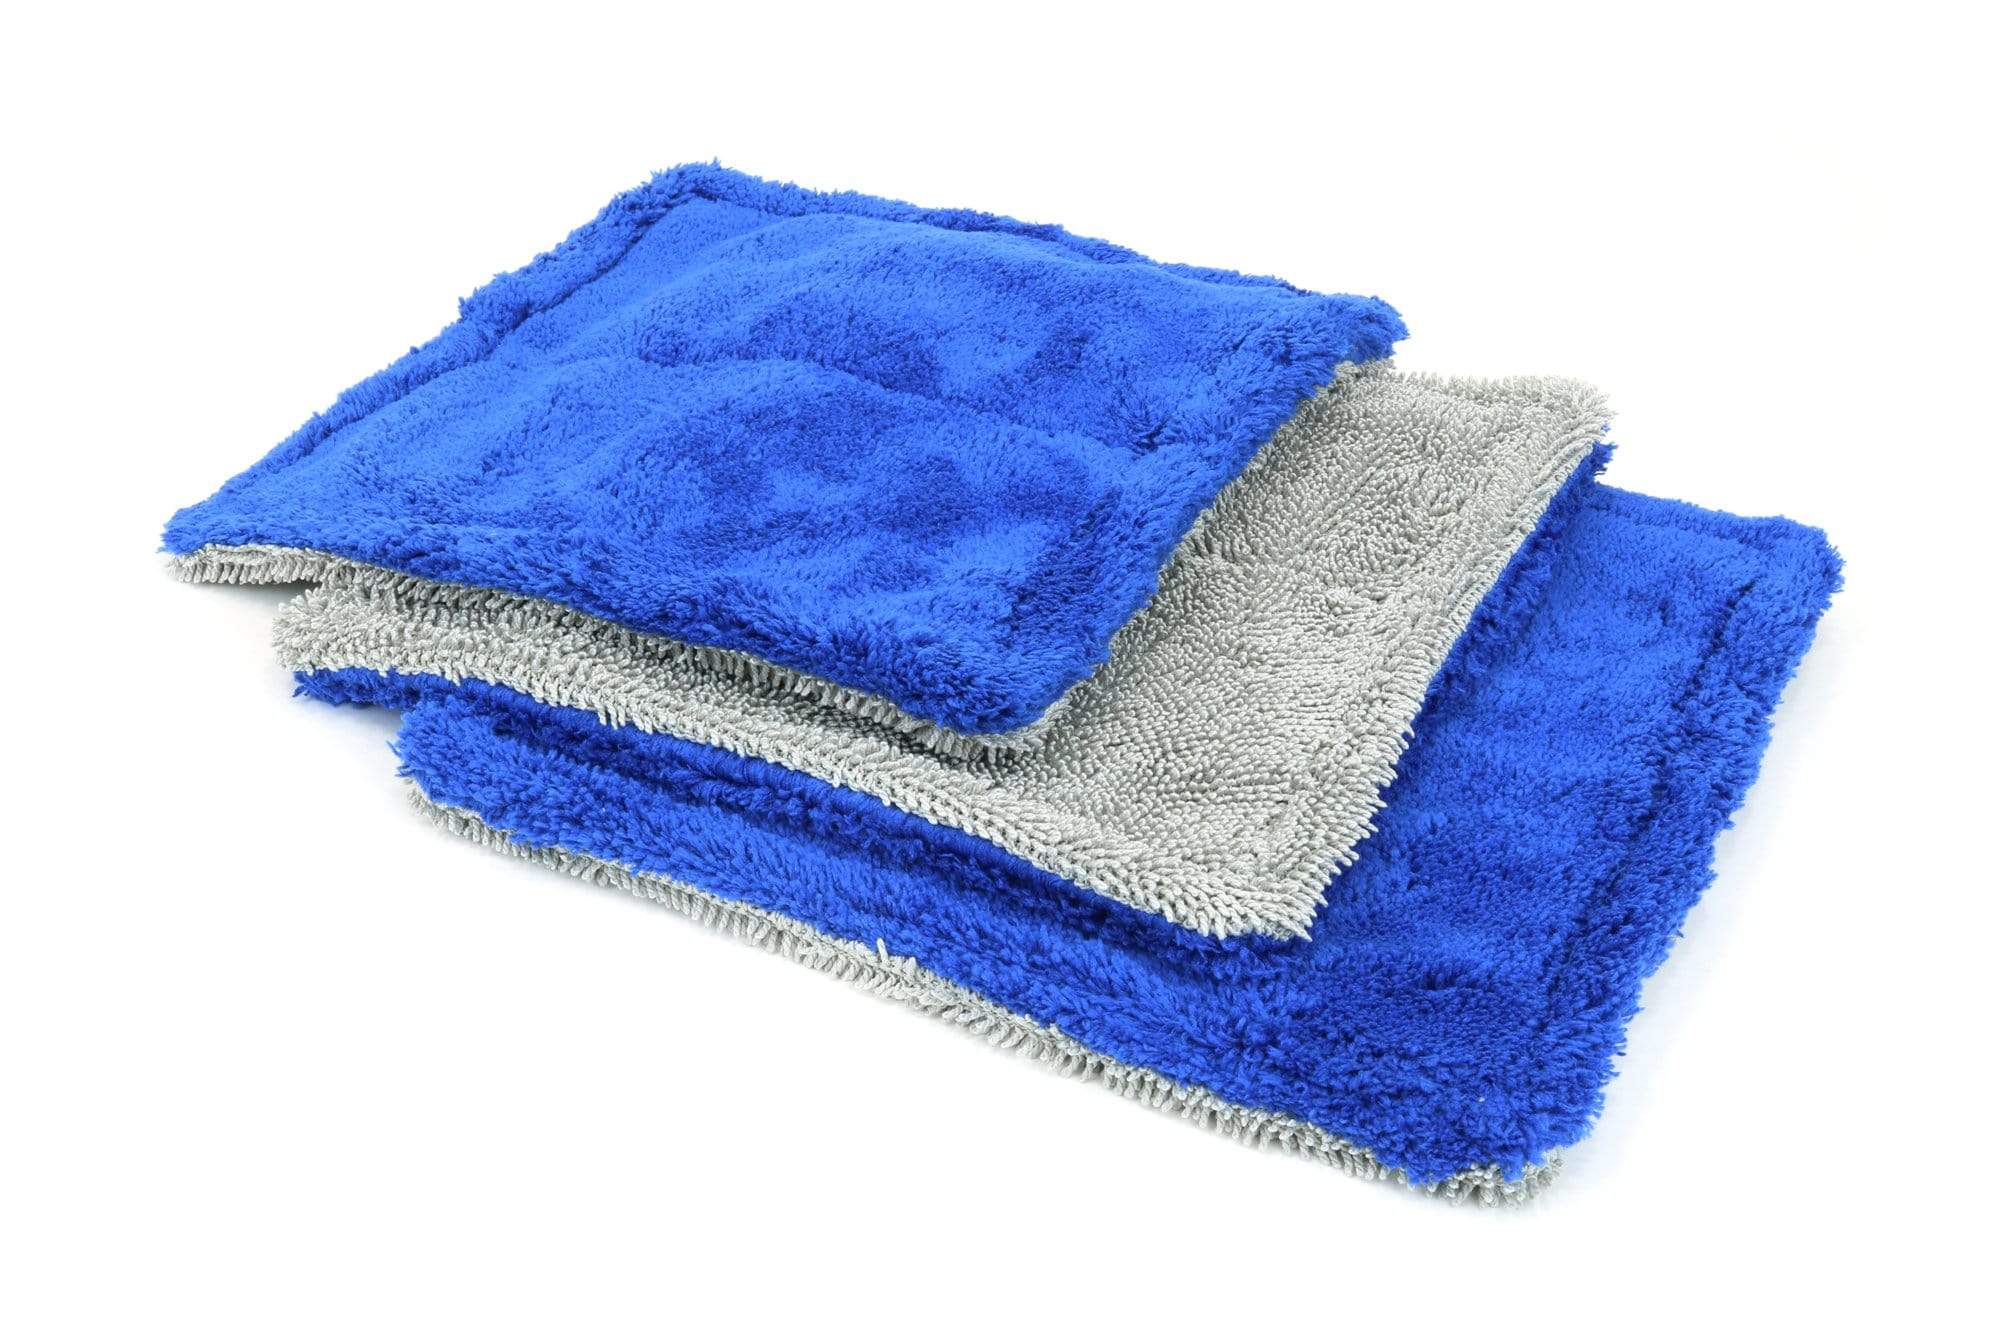 Autofiber Towel Blue Amphibian Mini - Microfiber Glass Towel (8 in. x 8 in., 1100gsm) - 3 pack